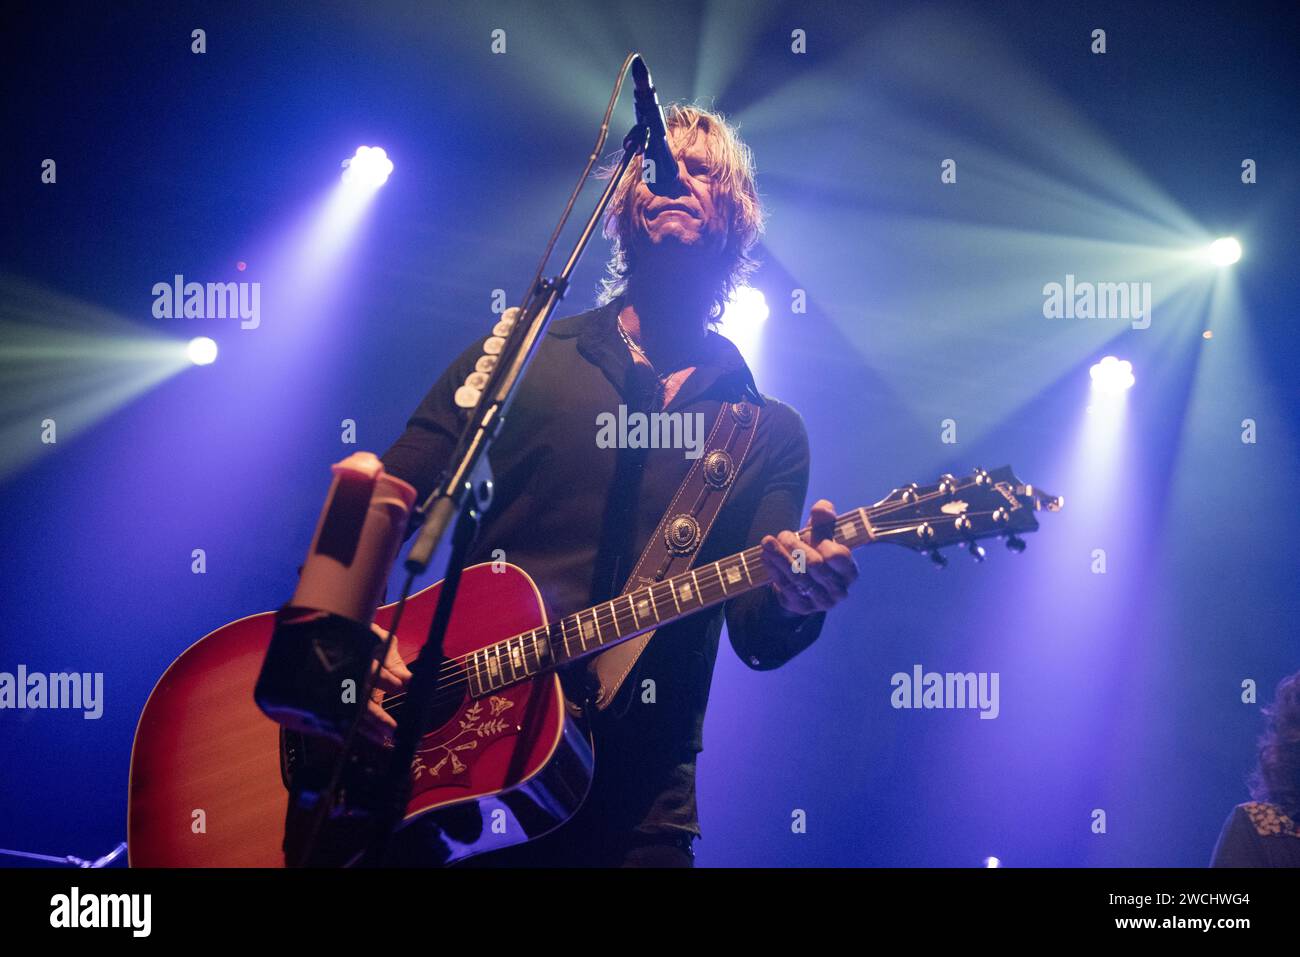 08 septembre 2019 : Duff McKagan de Guns N' Roses joue avec son groupe solo à Milan, en Italie Banque D'Images